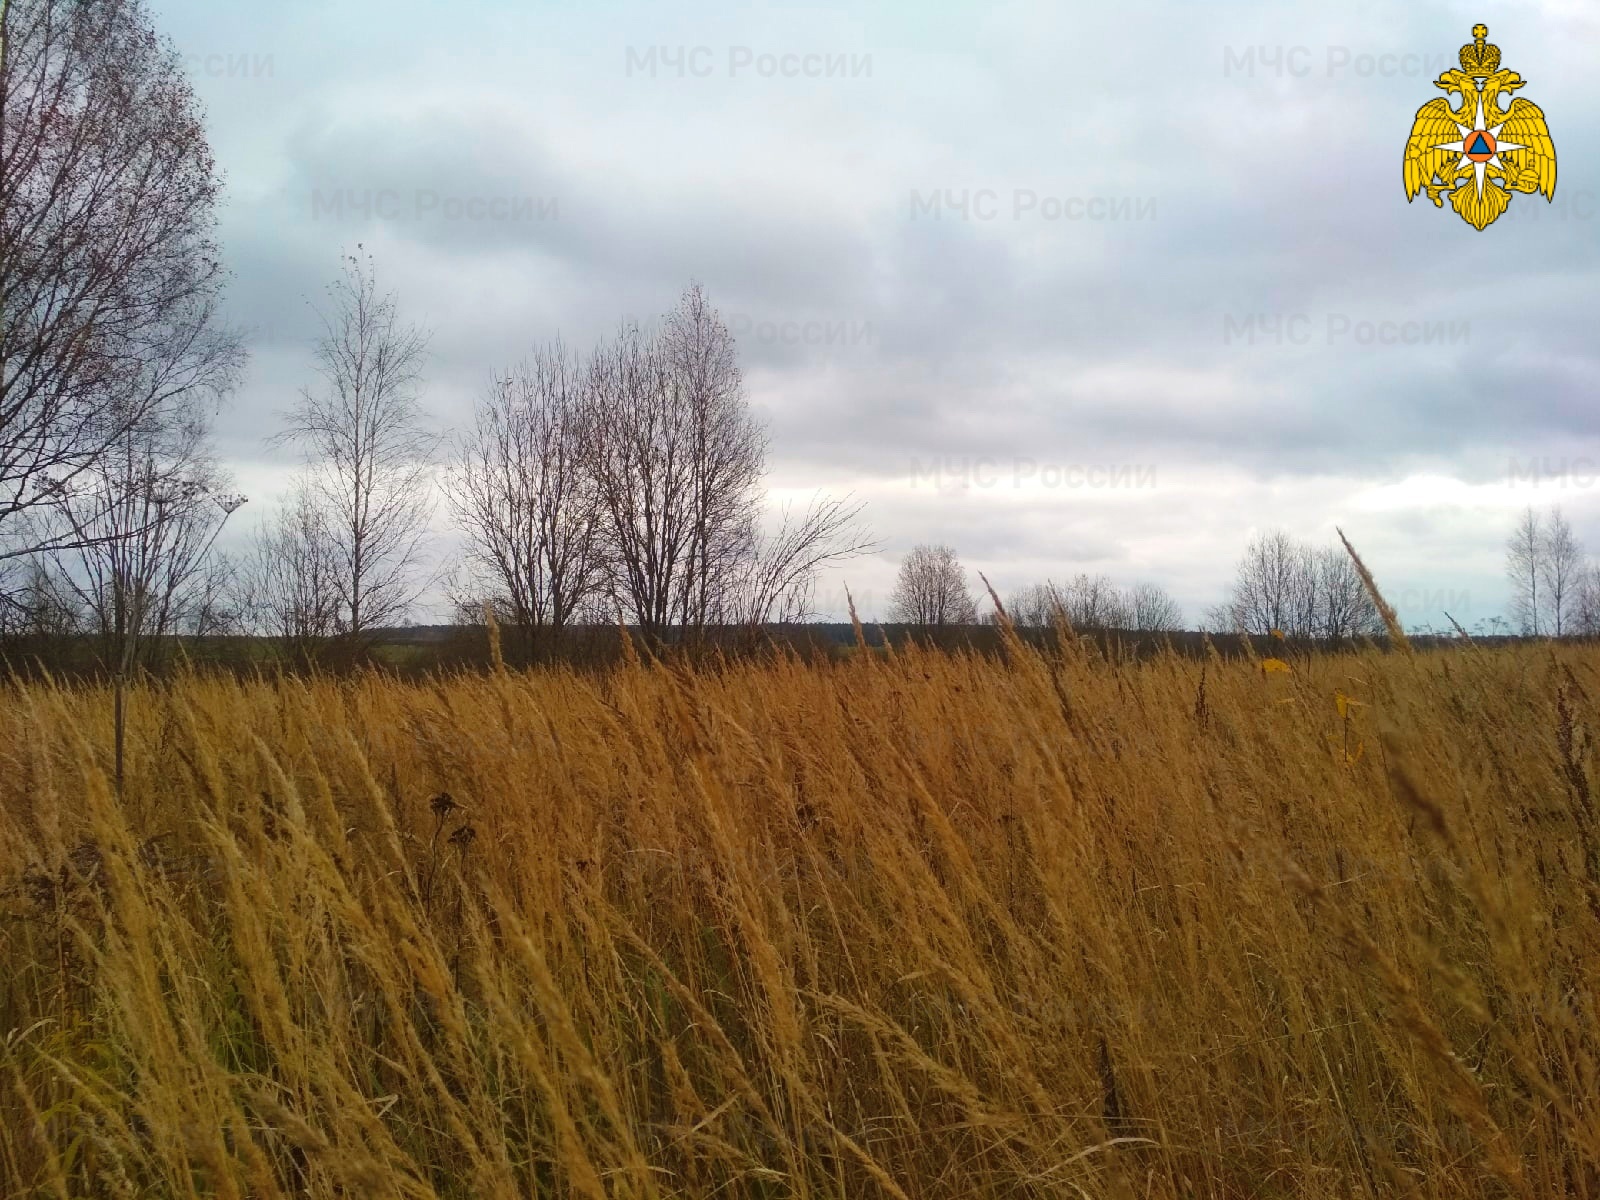 13 ноября в Смоленске прогнозируются чрезвычайно-опасные погодные условия